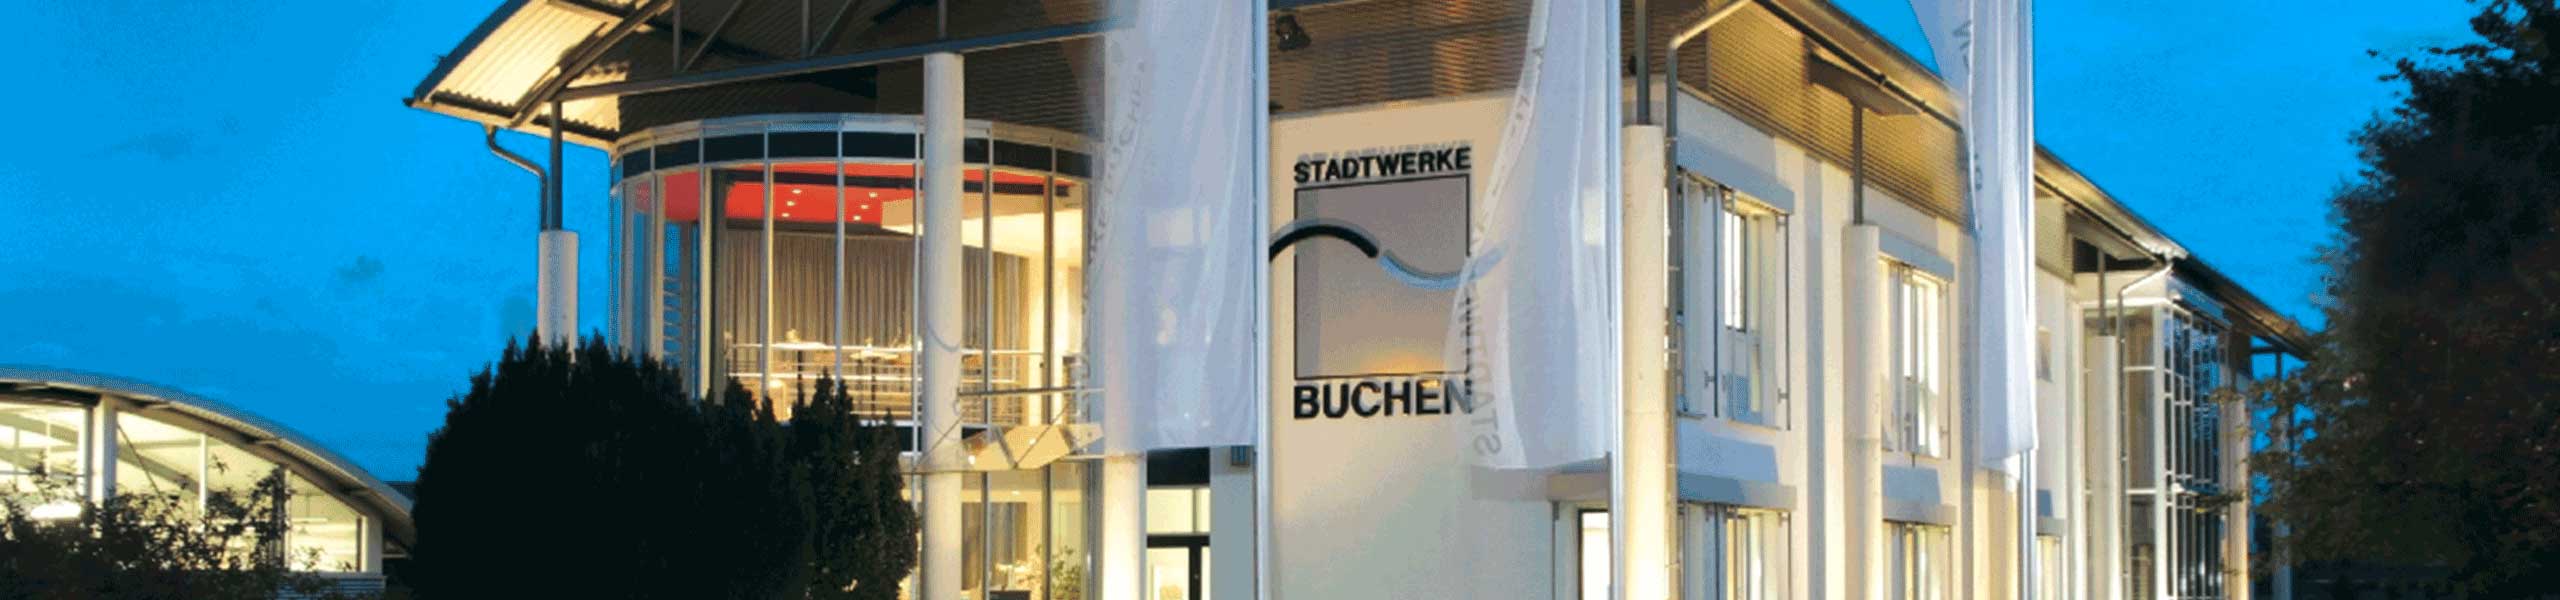 Stadtwerke Buchen GmbH & Co KG - Duales Studium (m/w/d) - für den Studiengang Mechatronik mit Schwerpunkt Energiewirtschaft